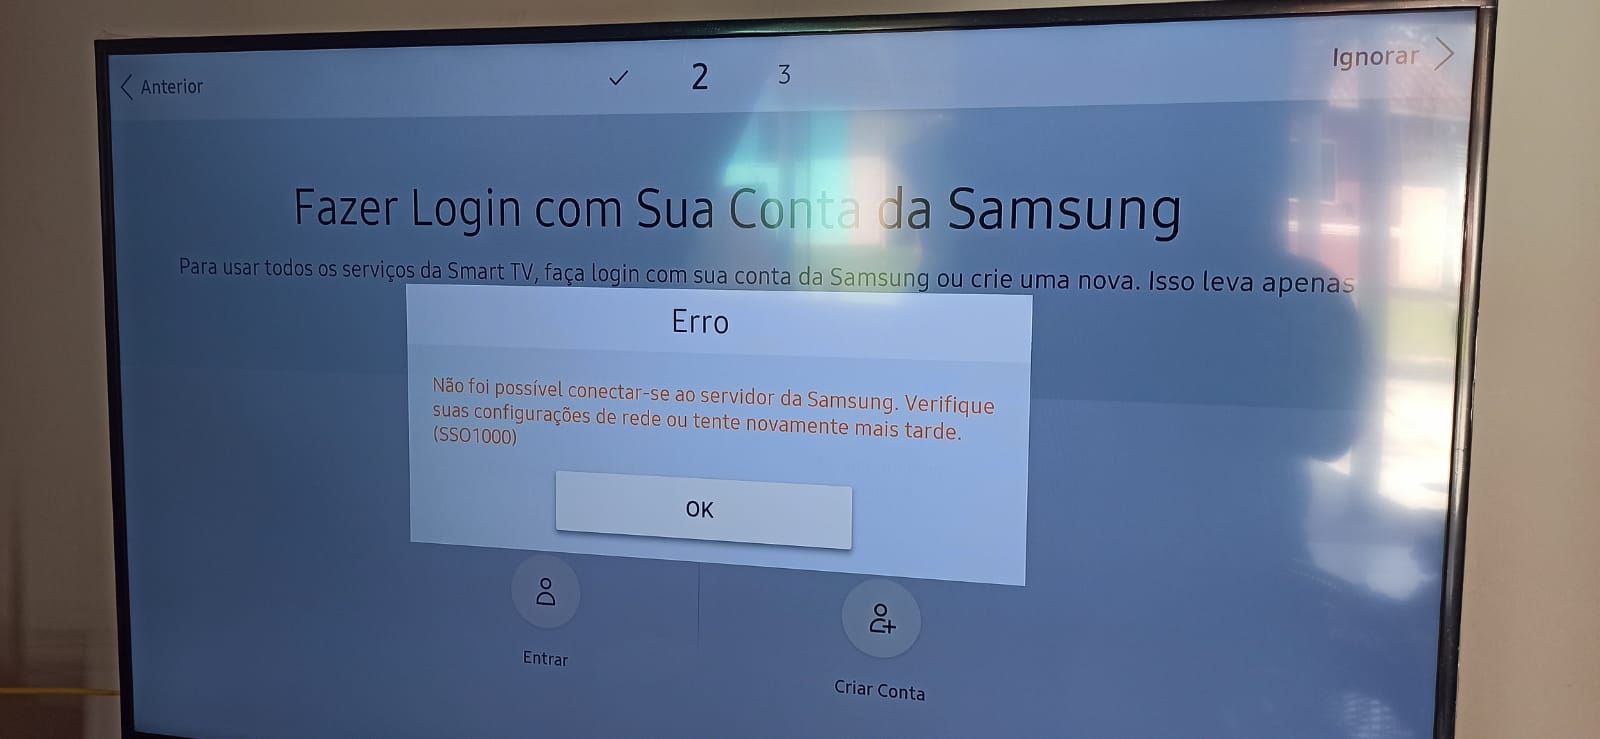 Samsung TV Plus expande sua oferta desportiva com o FIFA+